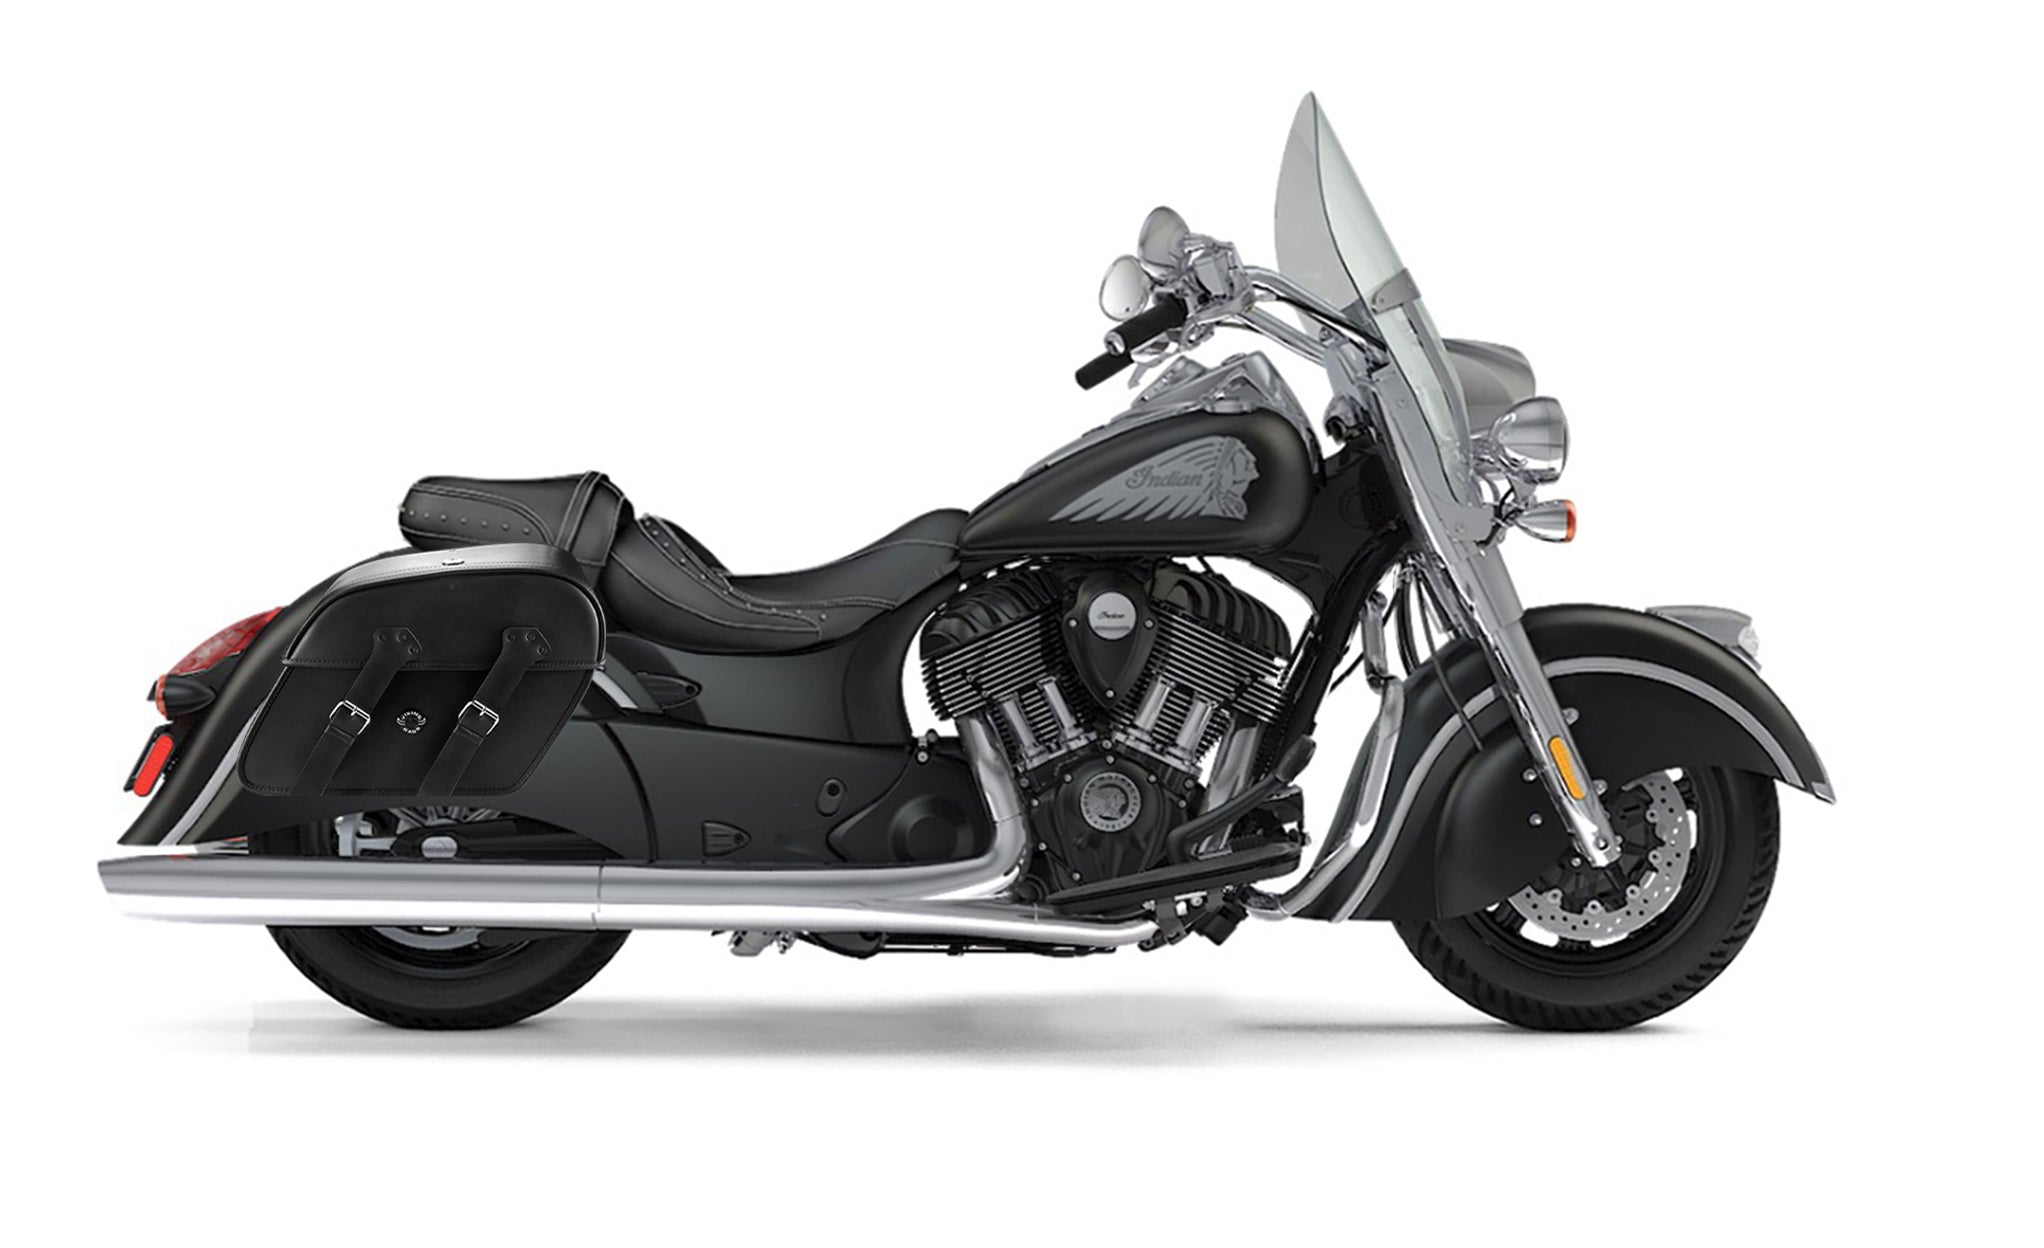 Viking Raven Large Indian Springfield Motorcycle Leather Saddlebags on Bike Photo @expand